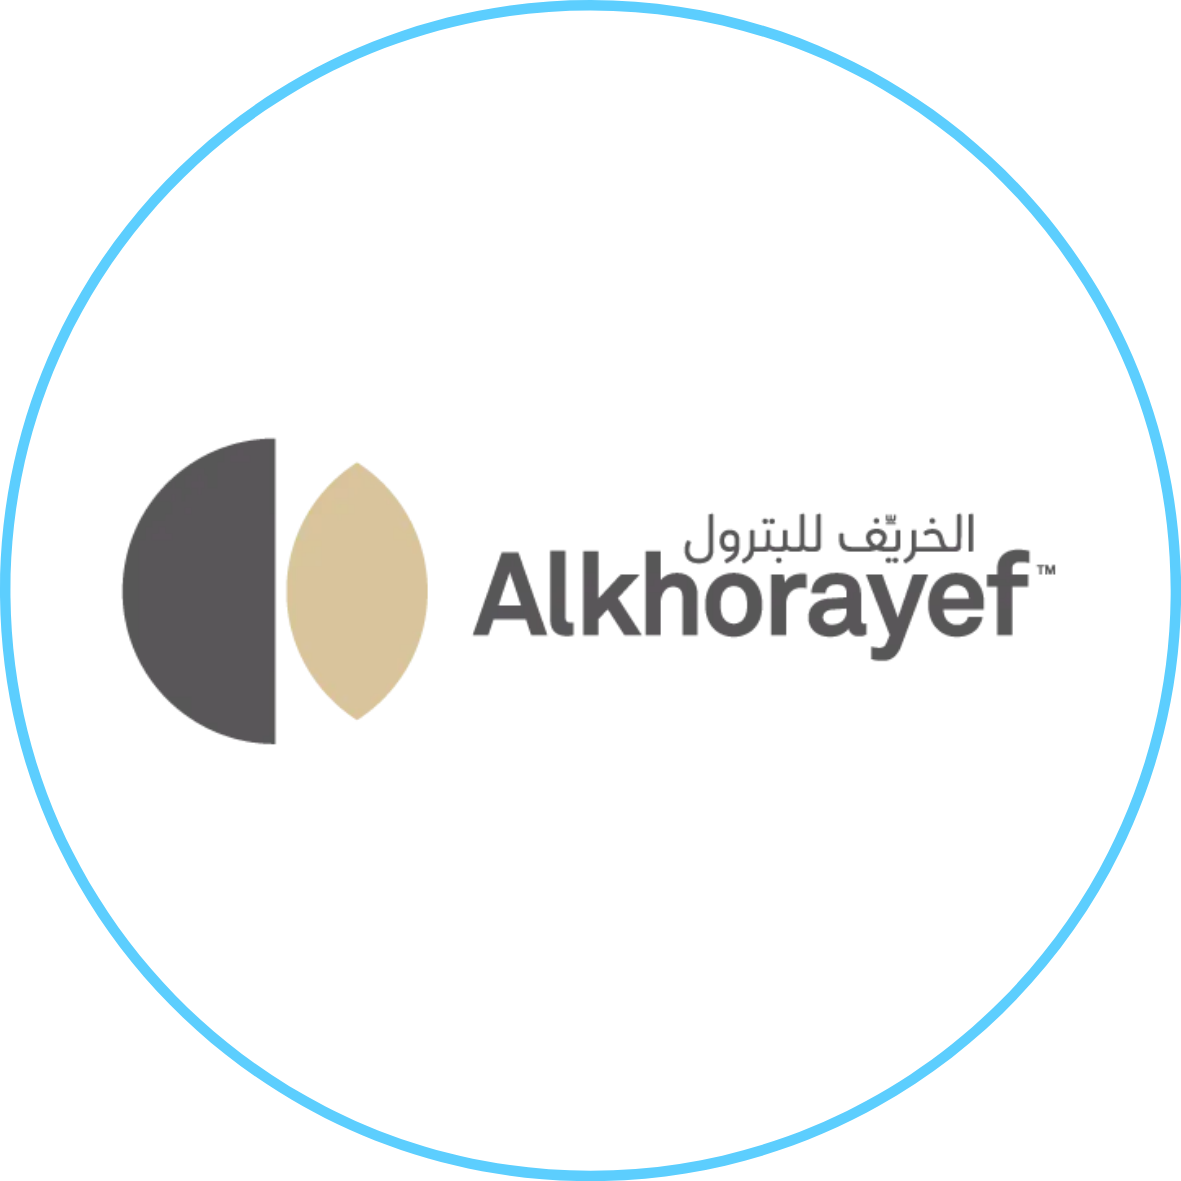 Alkhorayef